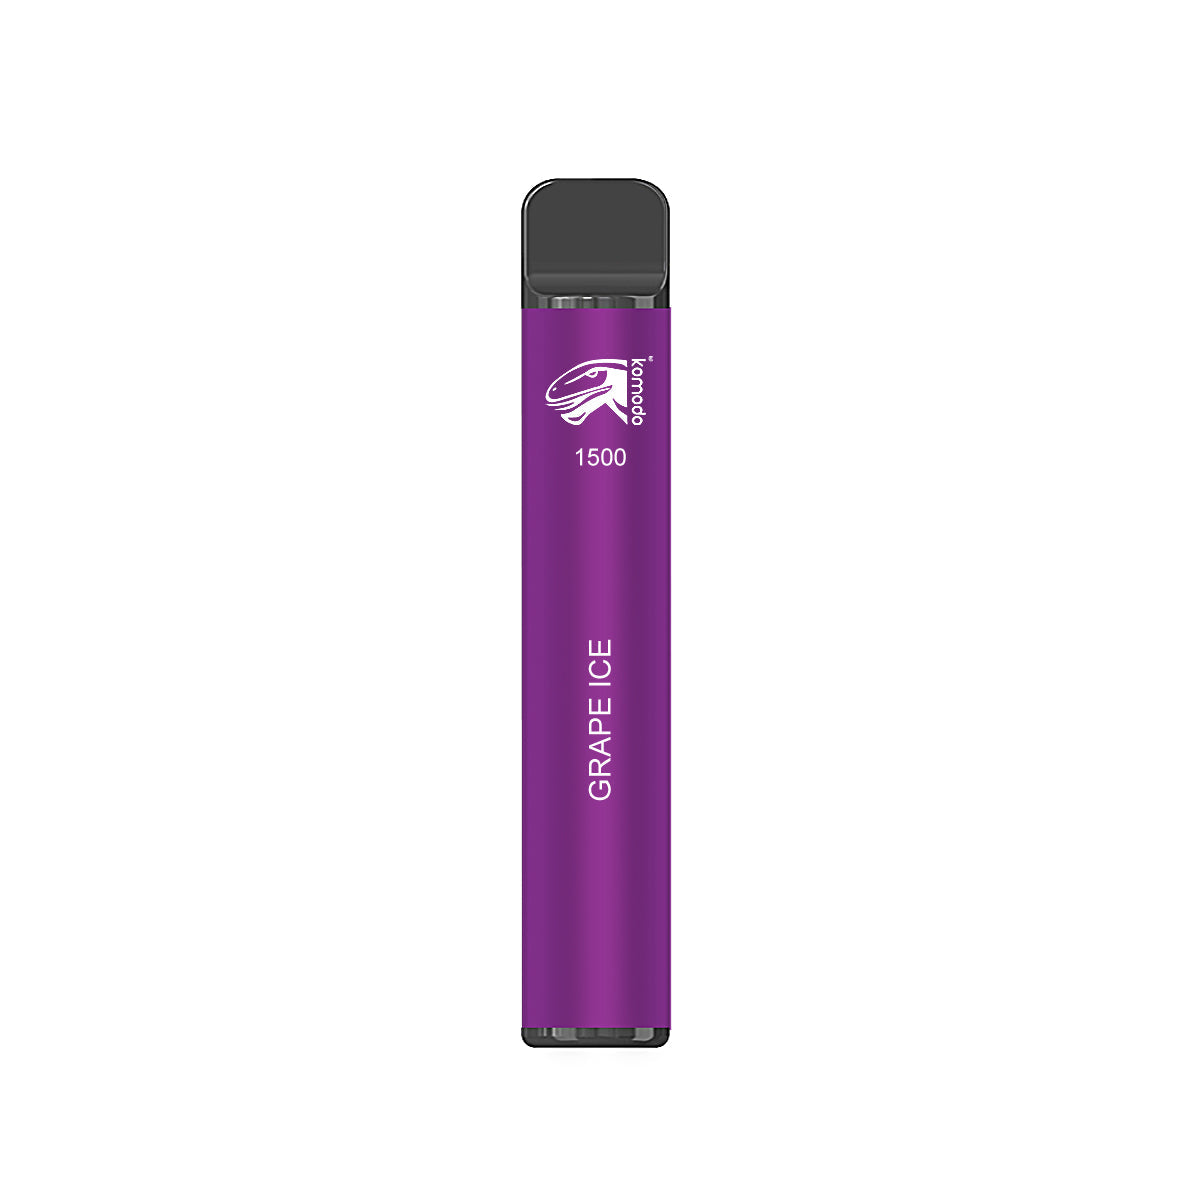 Komodo 1500 Puffs Disposable Vape Prefilled Electronic Cigarette (2pcs)